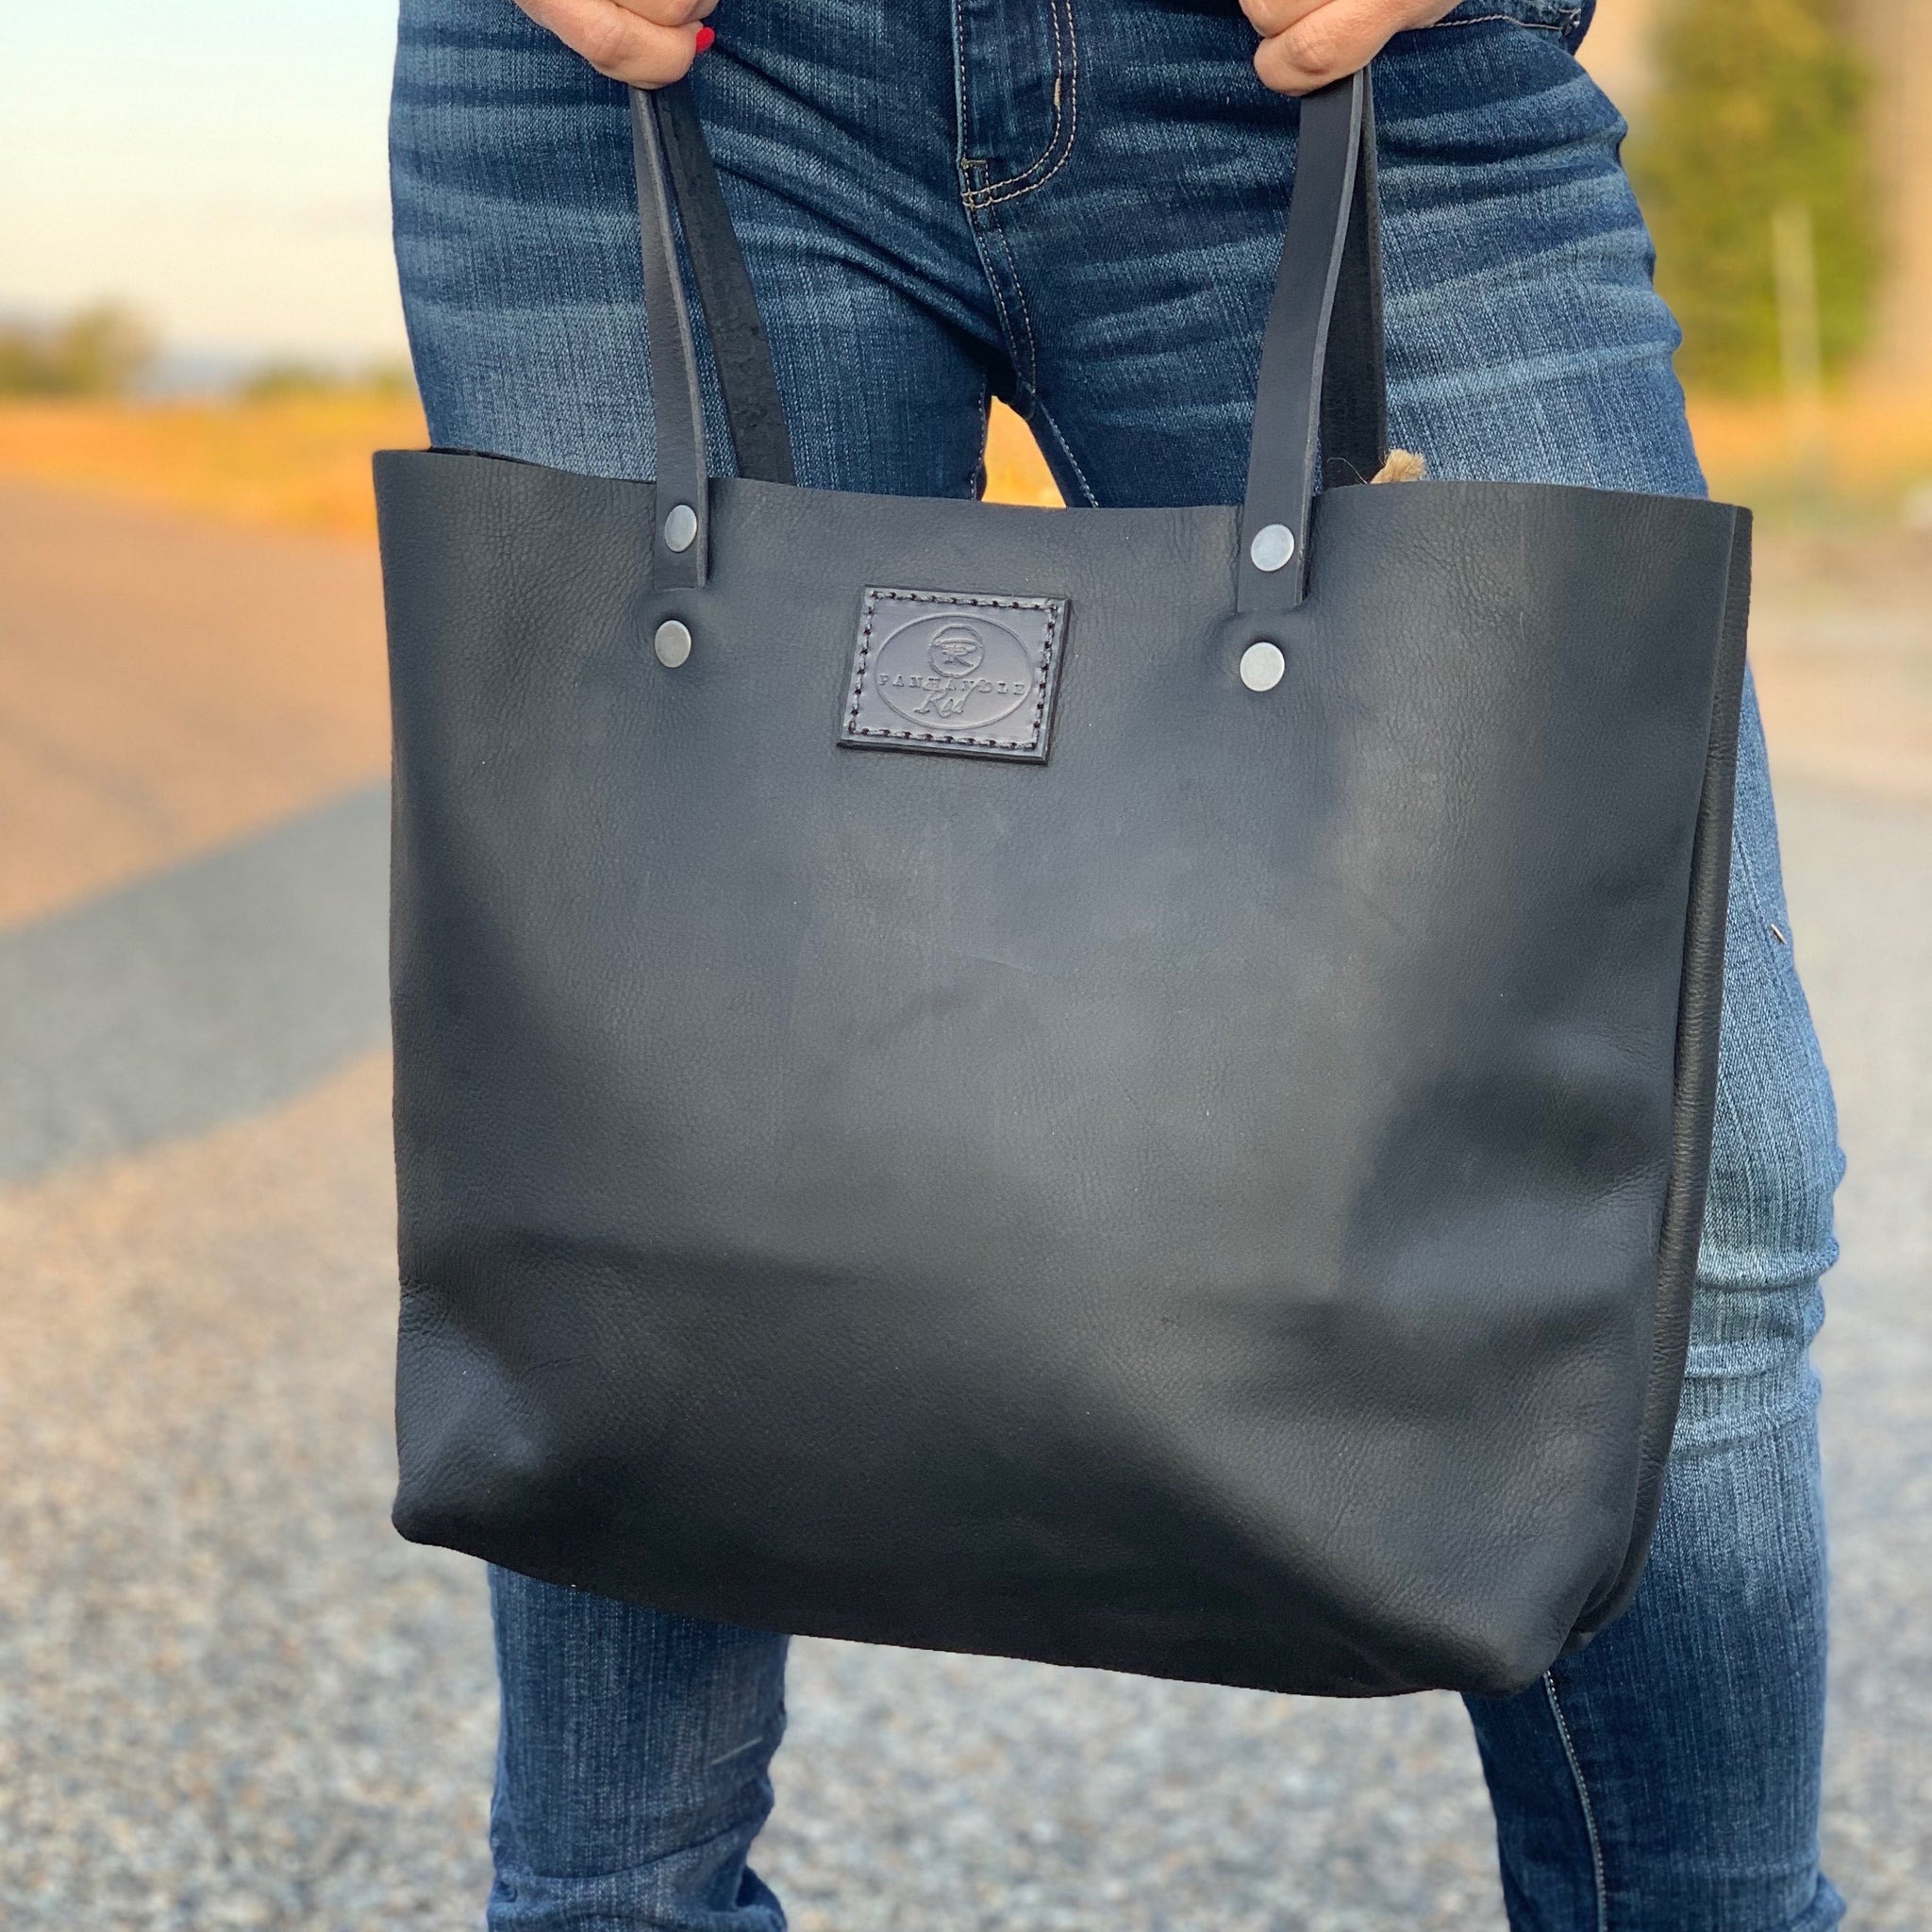 Black Leather Bag, Black Bag, Black Purse, Black Leather Tote Bag, Purses, Travel Bag, Gift Shop, Panhandle Red Leather Company, Panhandle Red, Leather Goods 